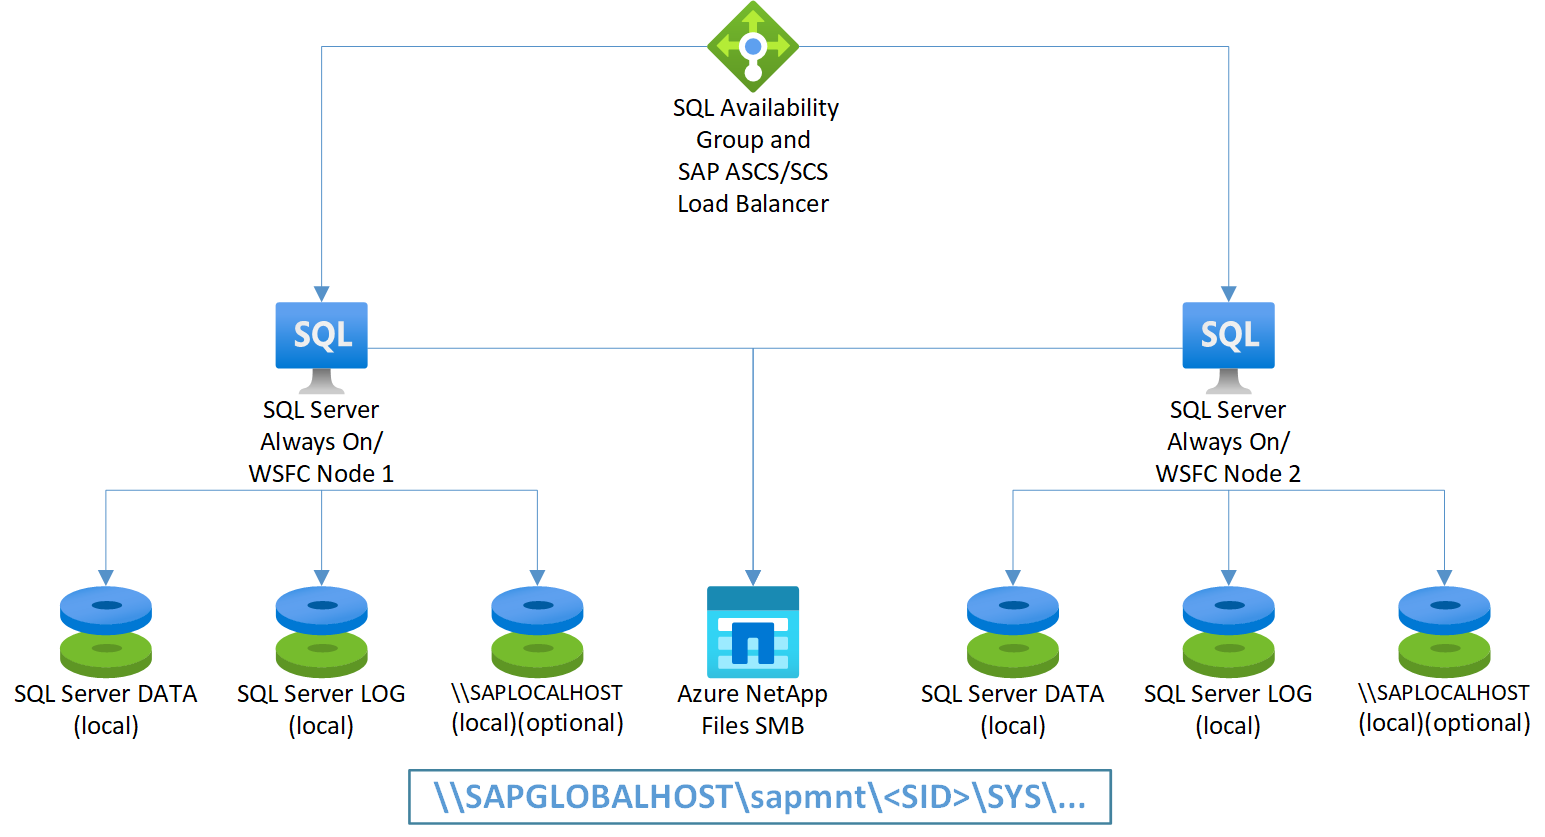 図: Azure NetApp Files SMB を使用した SQL Server Always On ノード上の SAP ASCS/SCS